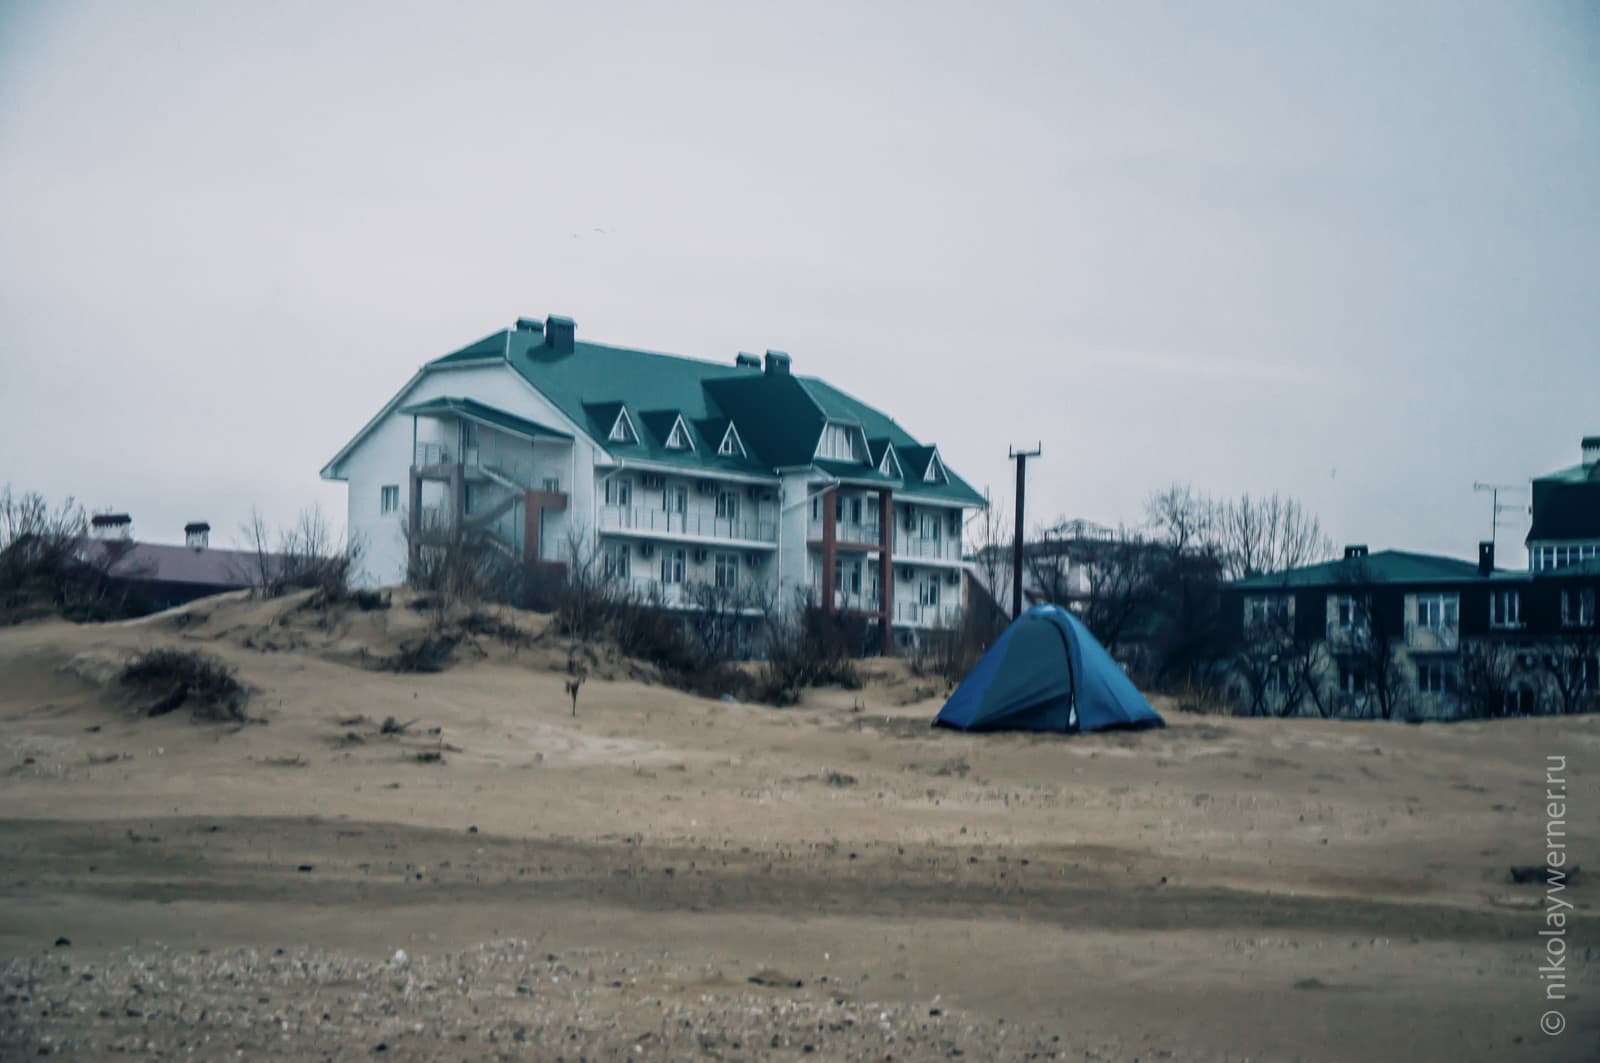 Синяя палатка среди песчанных дюн на пляже. Пасмурно. На заднем плане стоит трехэтажная гостиница.